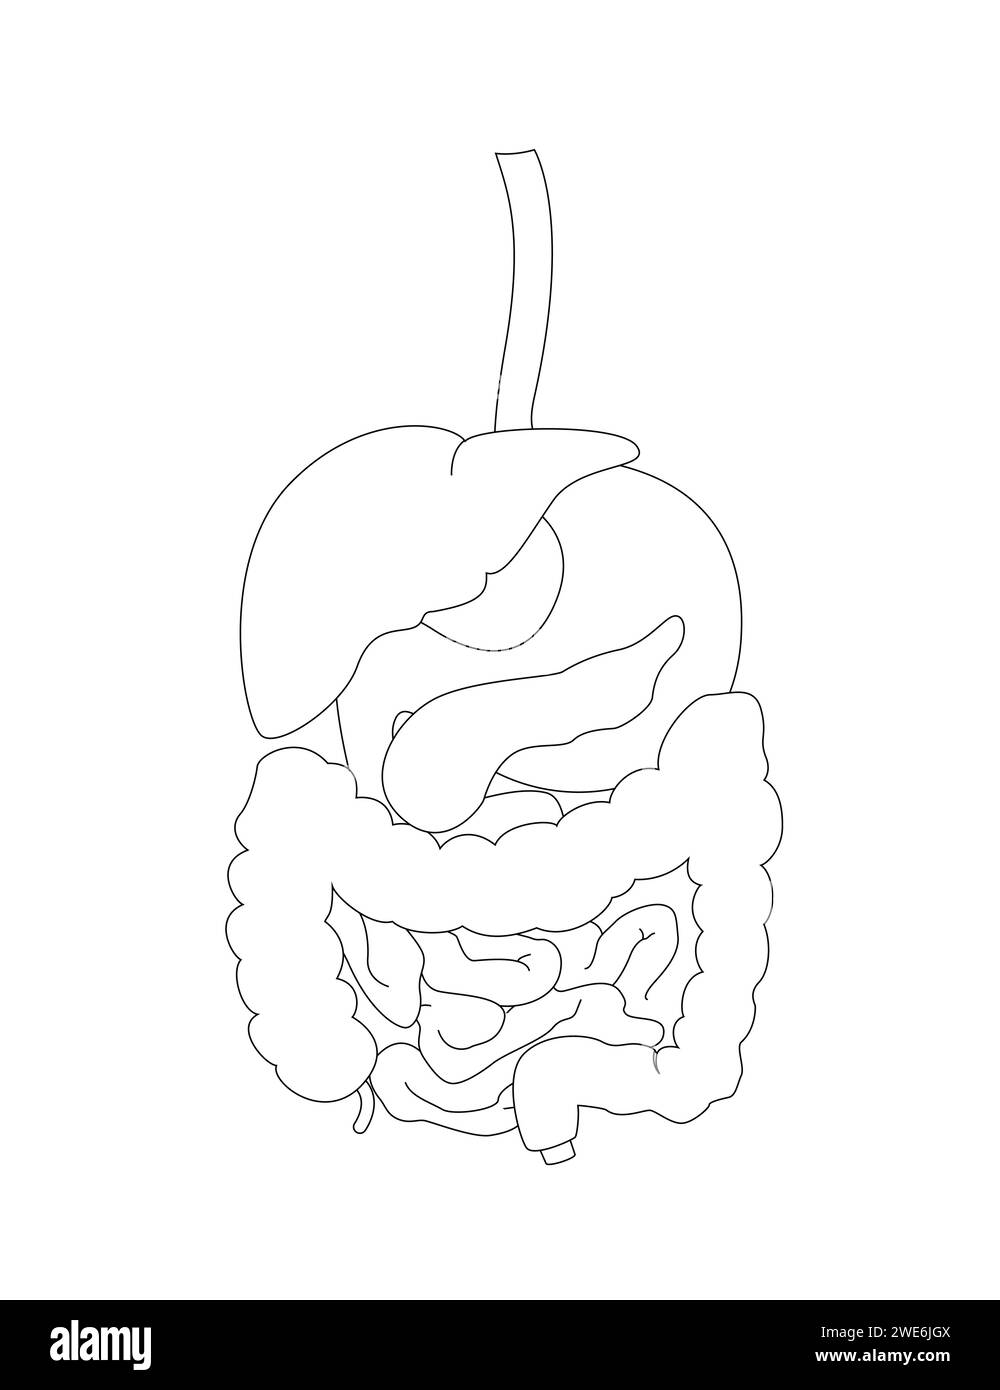 Conception du système digestif humain. Illustration de contour pour bannière, couverture de livre, usage éducatif. Illustration vectorielle Illustration de Vecteur